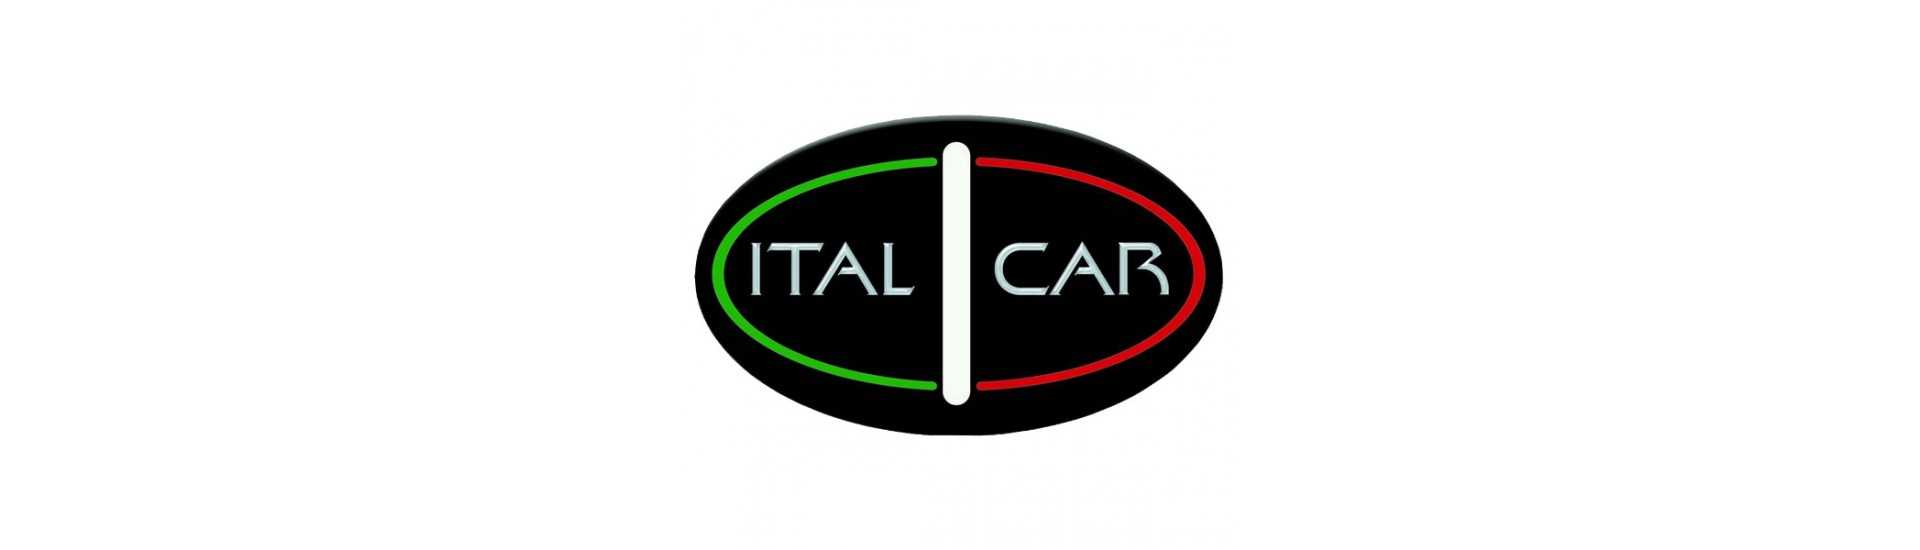 Kroppsarbete till bästa pris för bil utan tillstånd Italcar